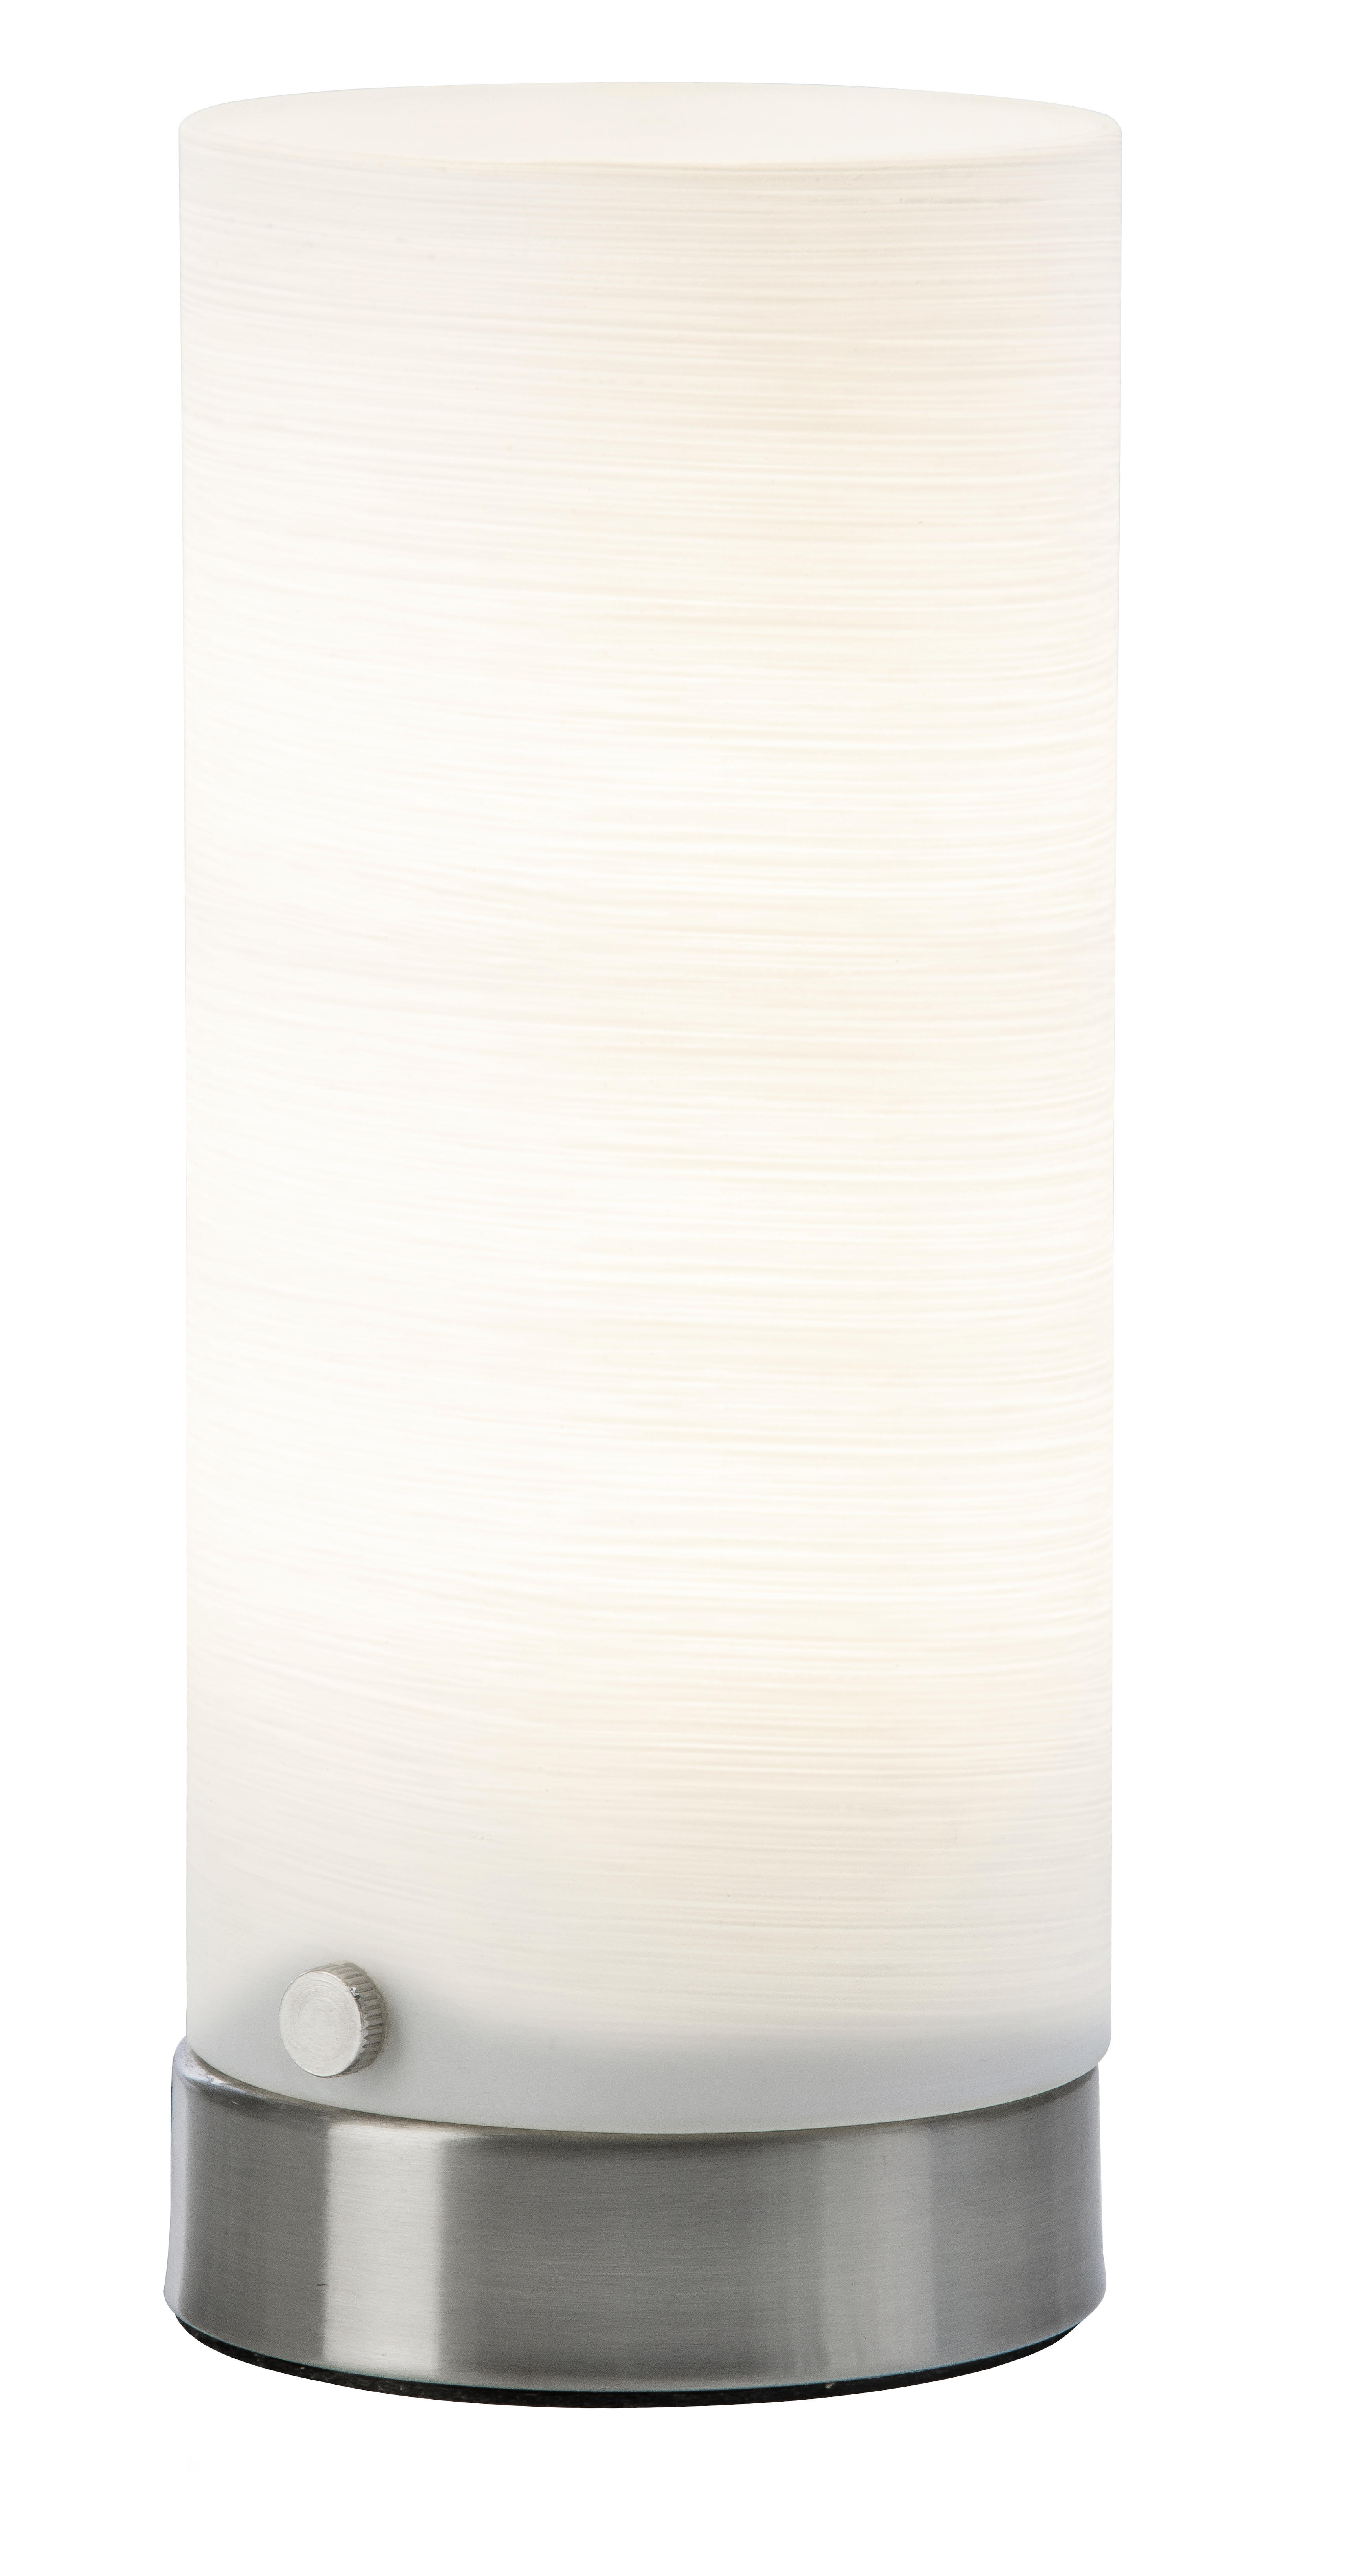 LED-TISCHLEUCHTE Maik 8,5/20 cm   - Weiß/Nickelfarben, Basics, Kunststoff/Metall (8,5/20cm)